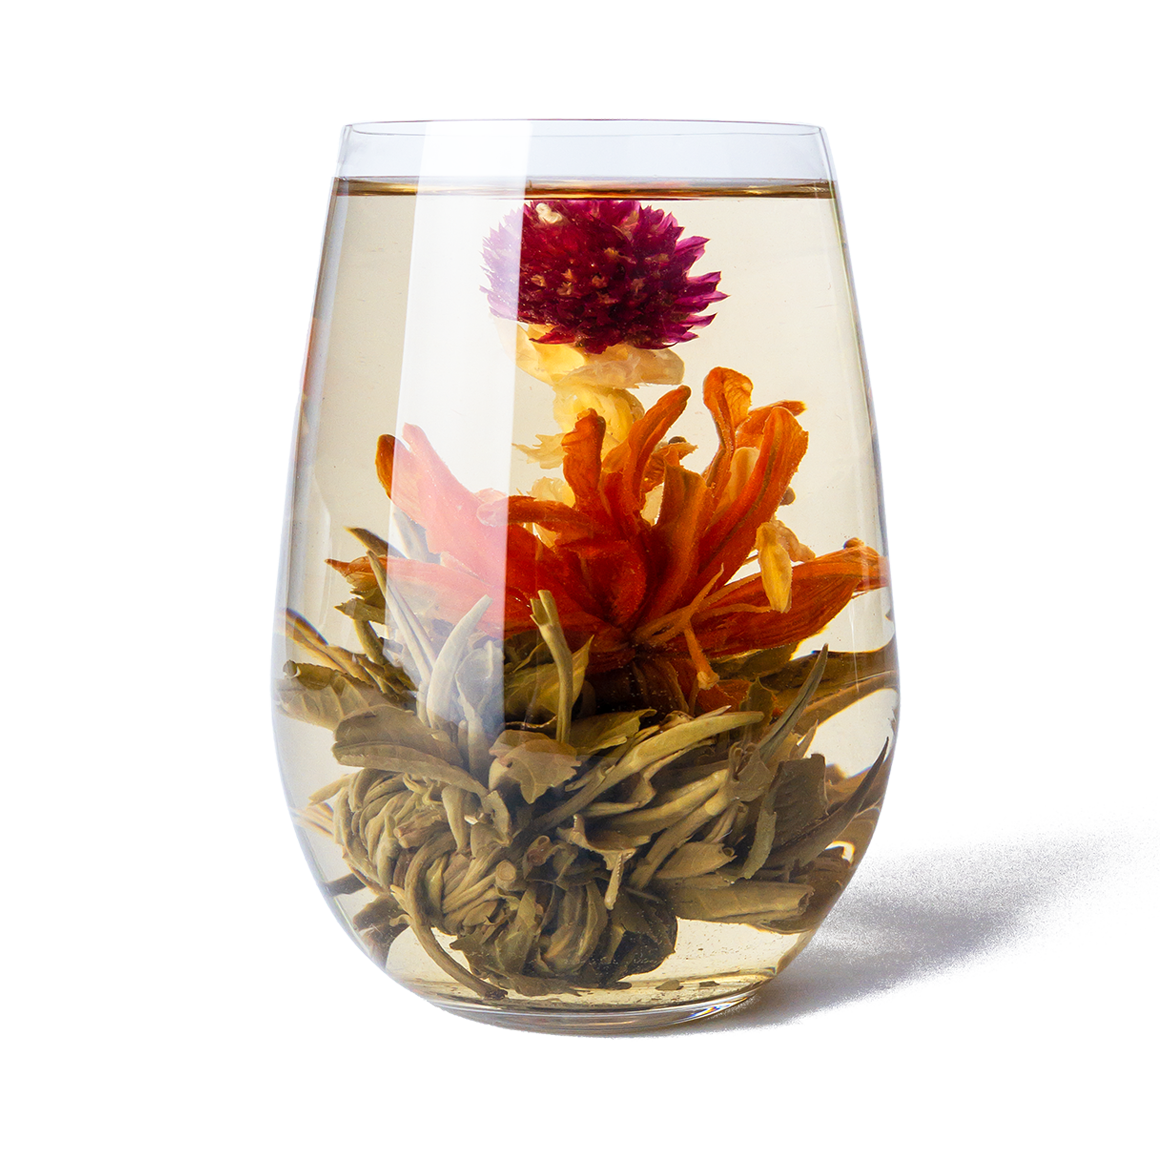 PekoeTea Edinburgh Divine Lily Blooming Flowering tea in a glass